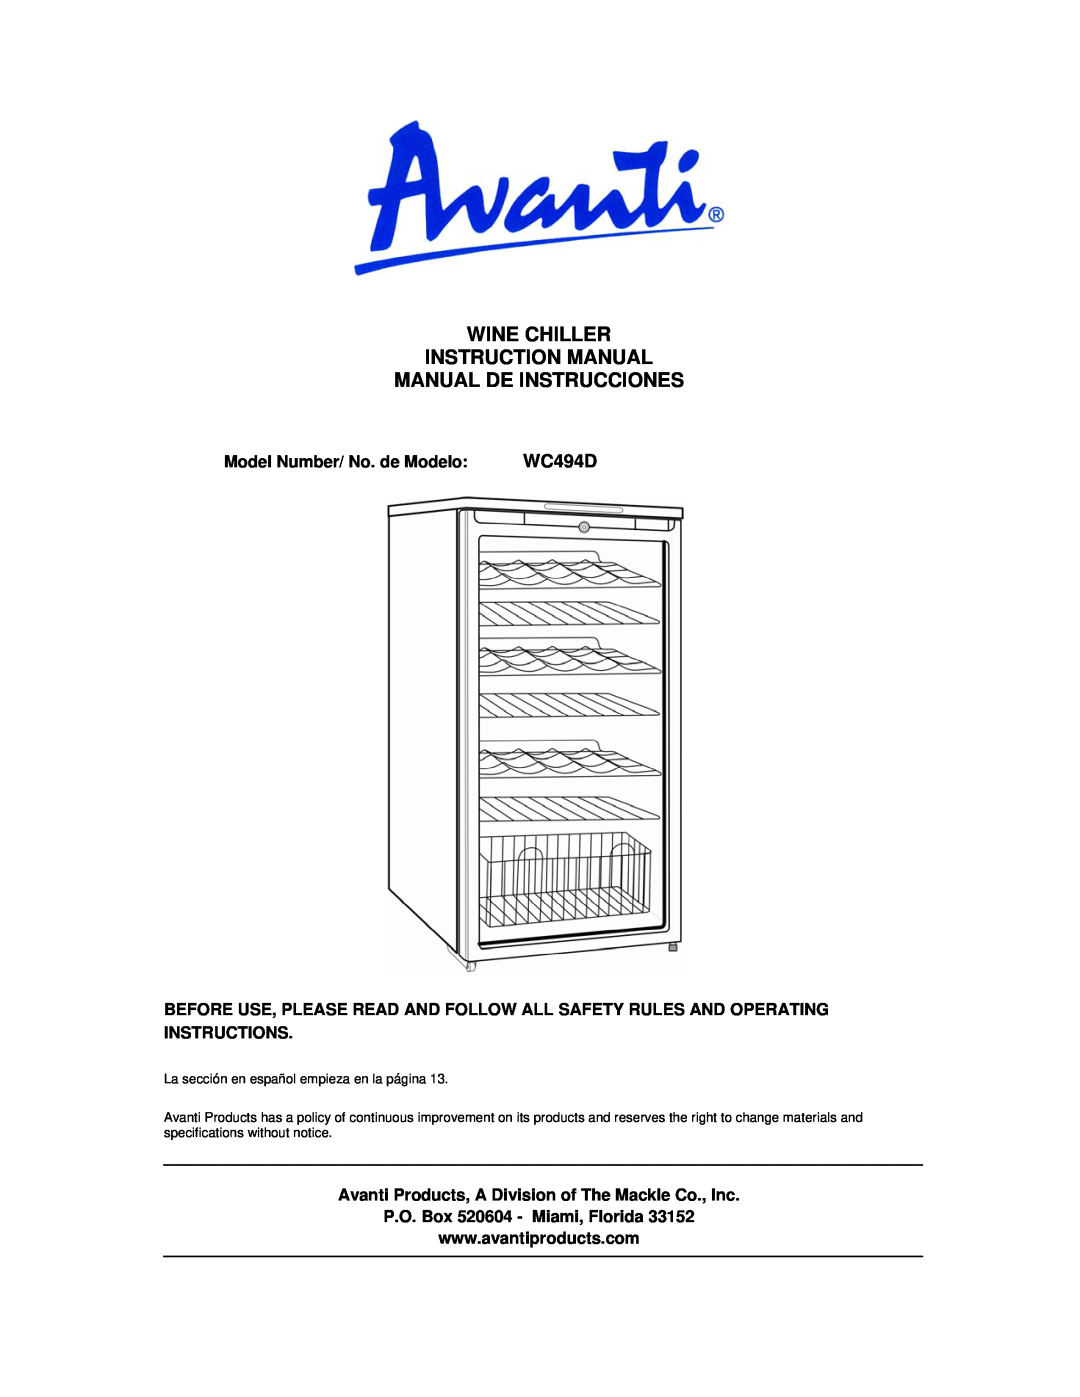 Avanti WC494D instruction manual Manual De Instrucciones, Model Number/ No. de Modelo, P.O. Box 520604 - Miami, Florida 